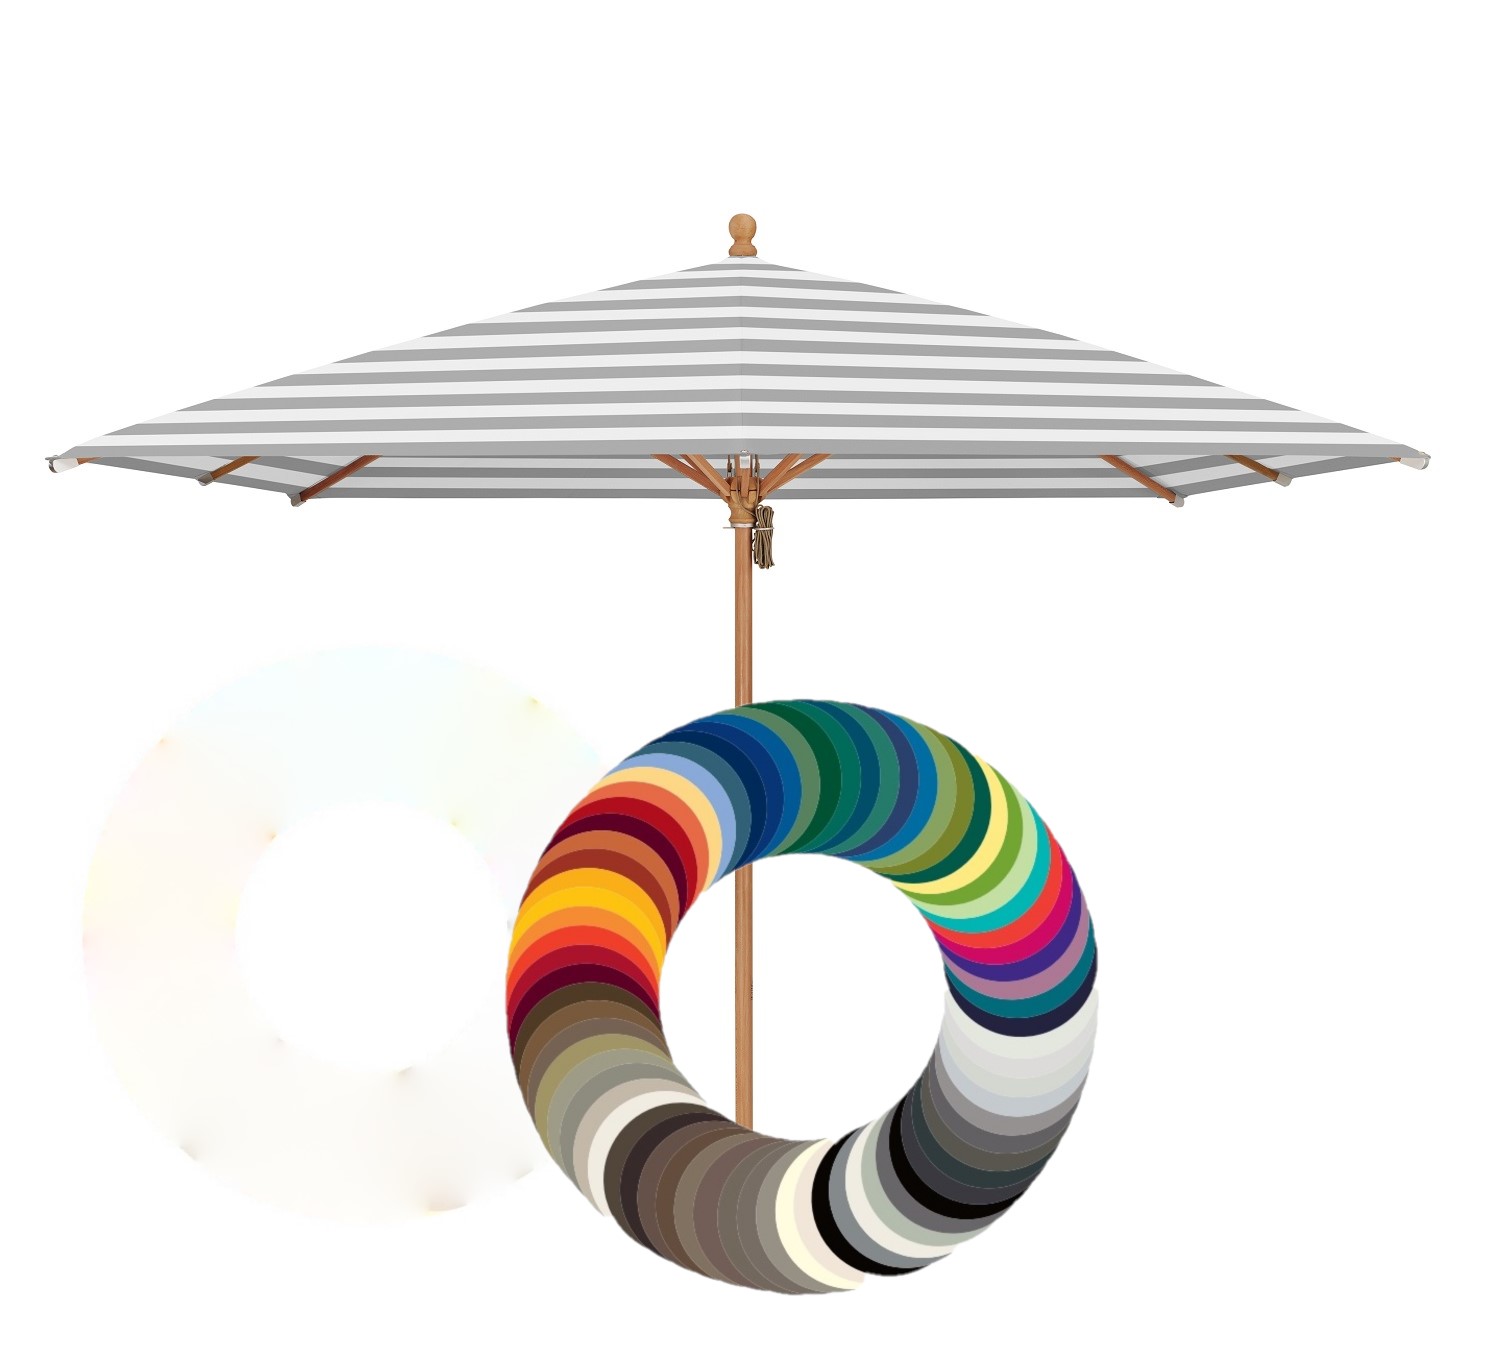 Piazzino parasoldoek vierkant